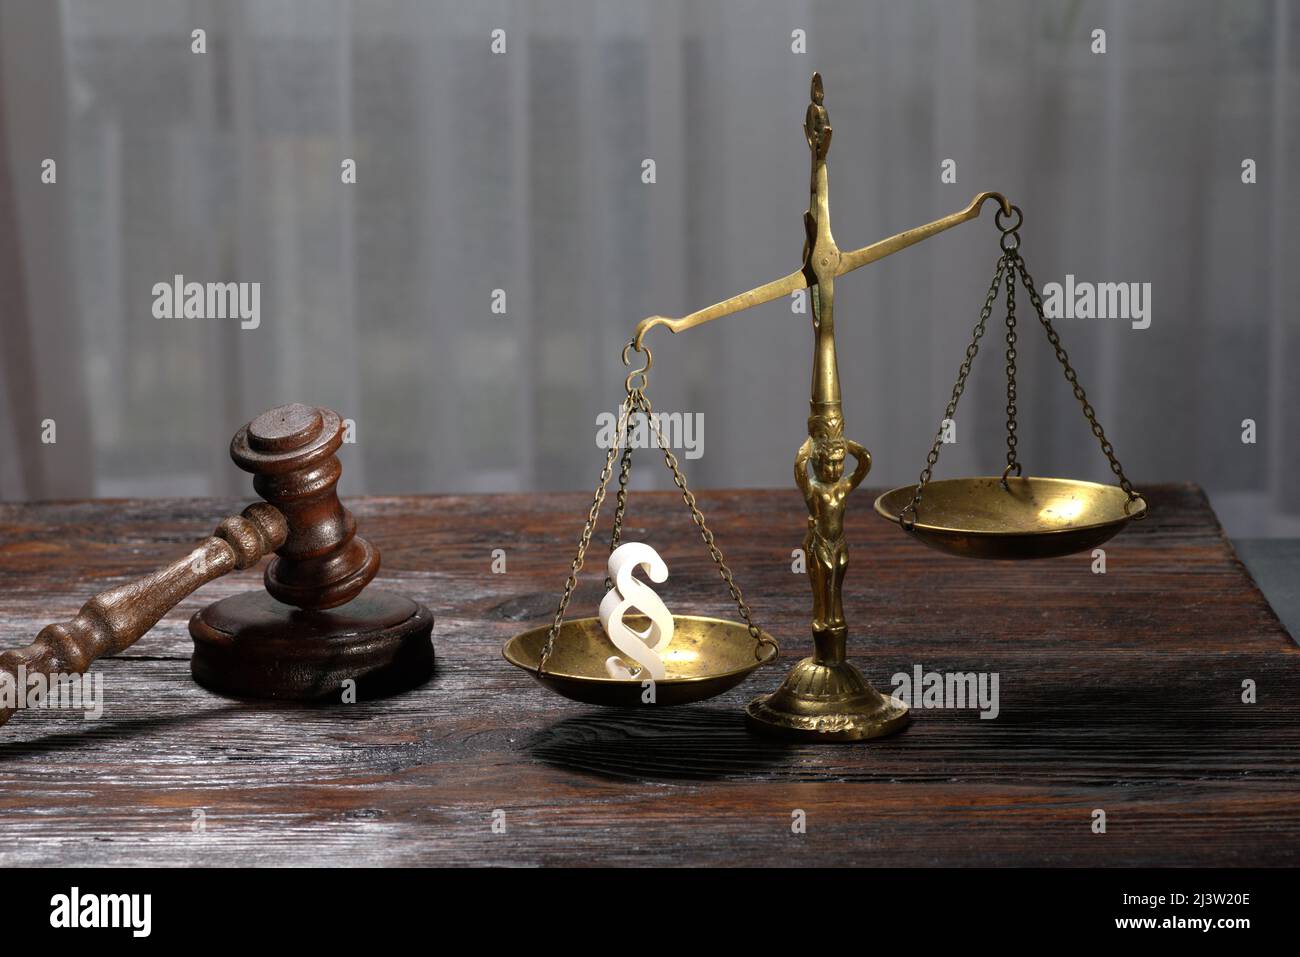 Les juges en bois ont droit et symbole de la loi et de la justice sur table dans une salle d'audience ou un bureau d'application de la loi sur fond sombre Banque D'Images